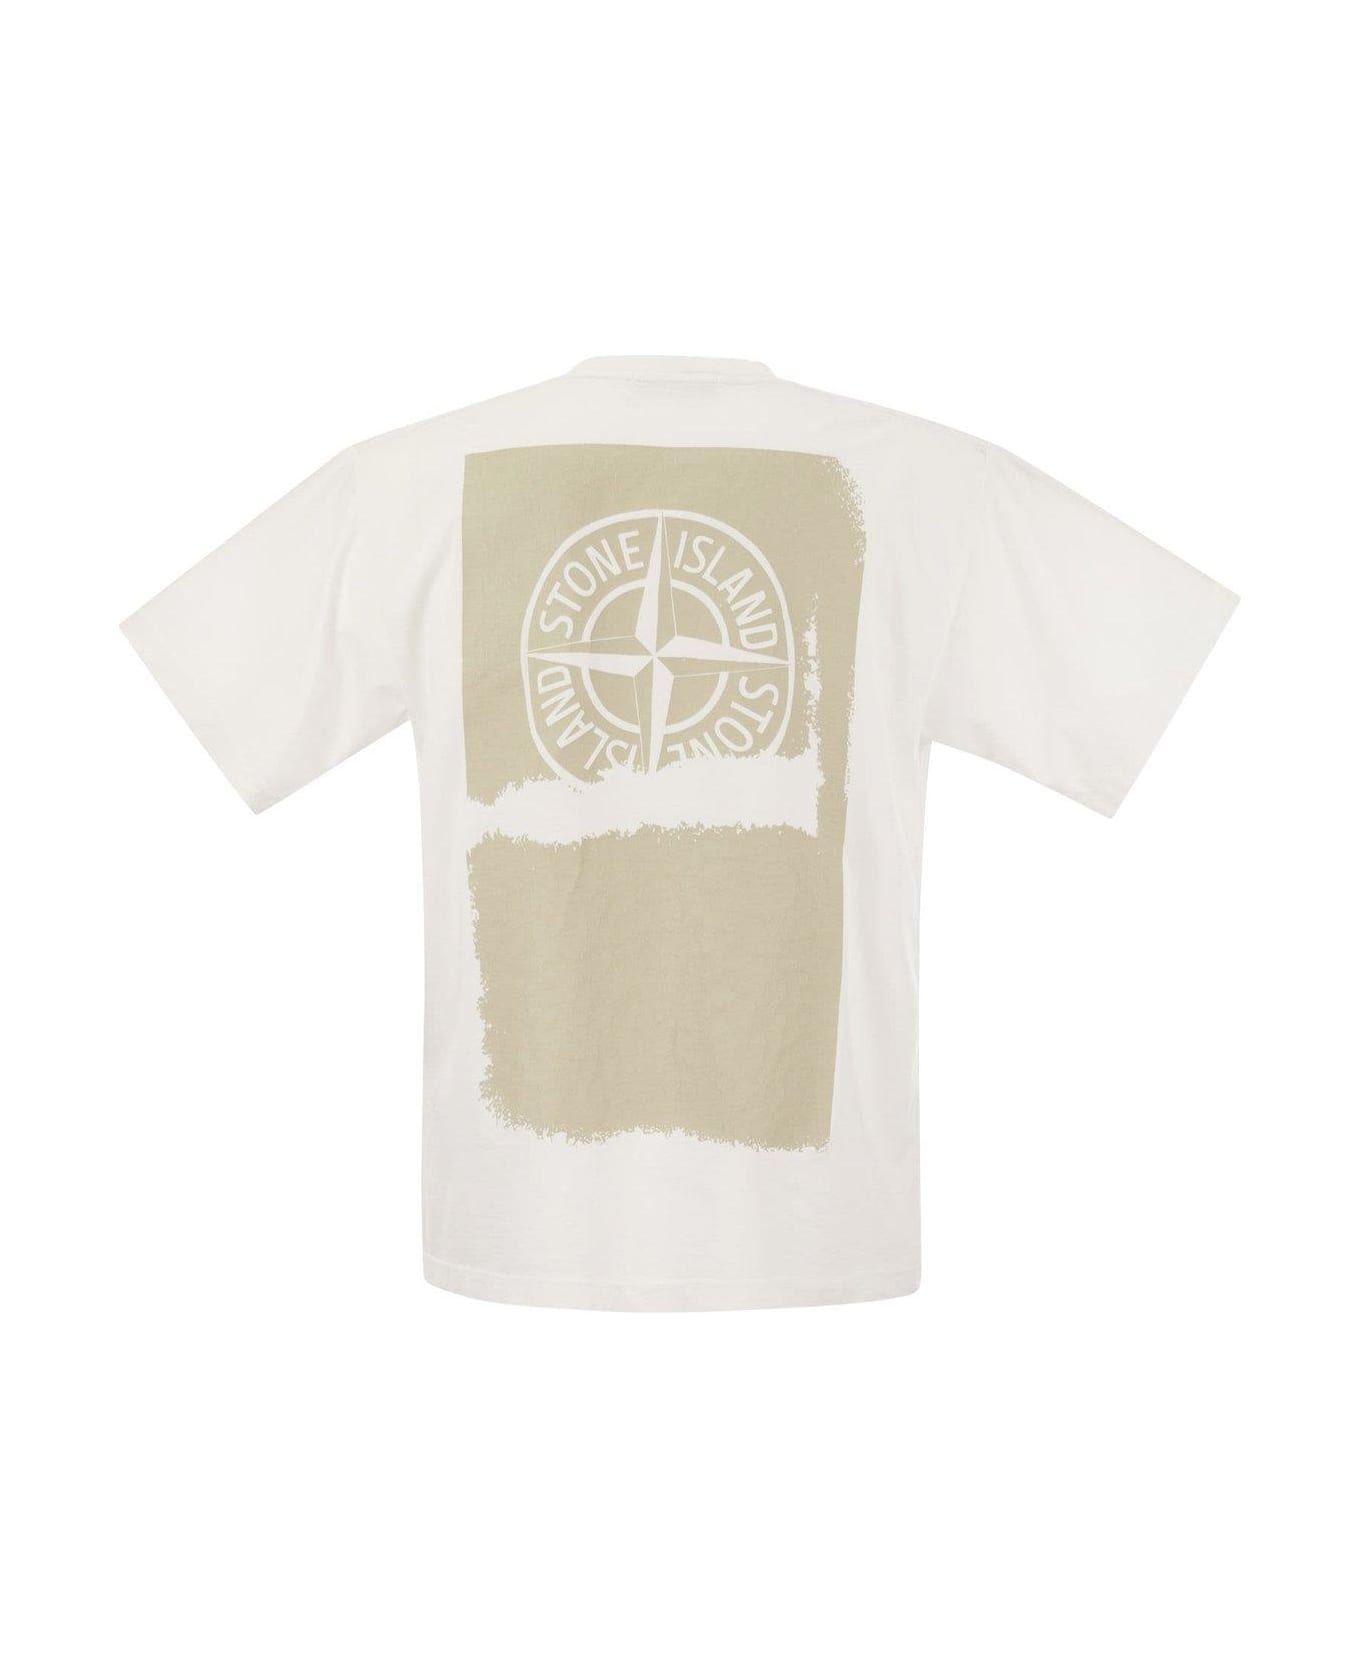 Stone Island Back Print T-shirt - White シャツ